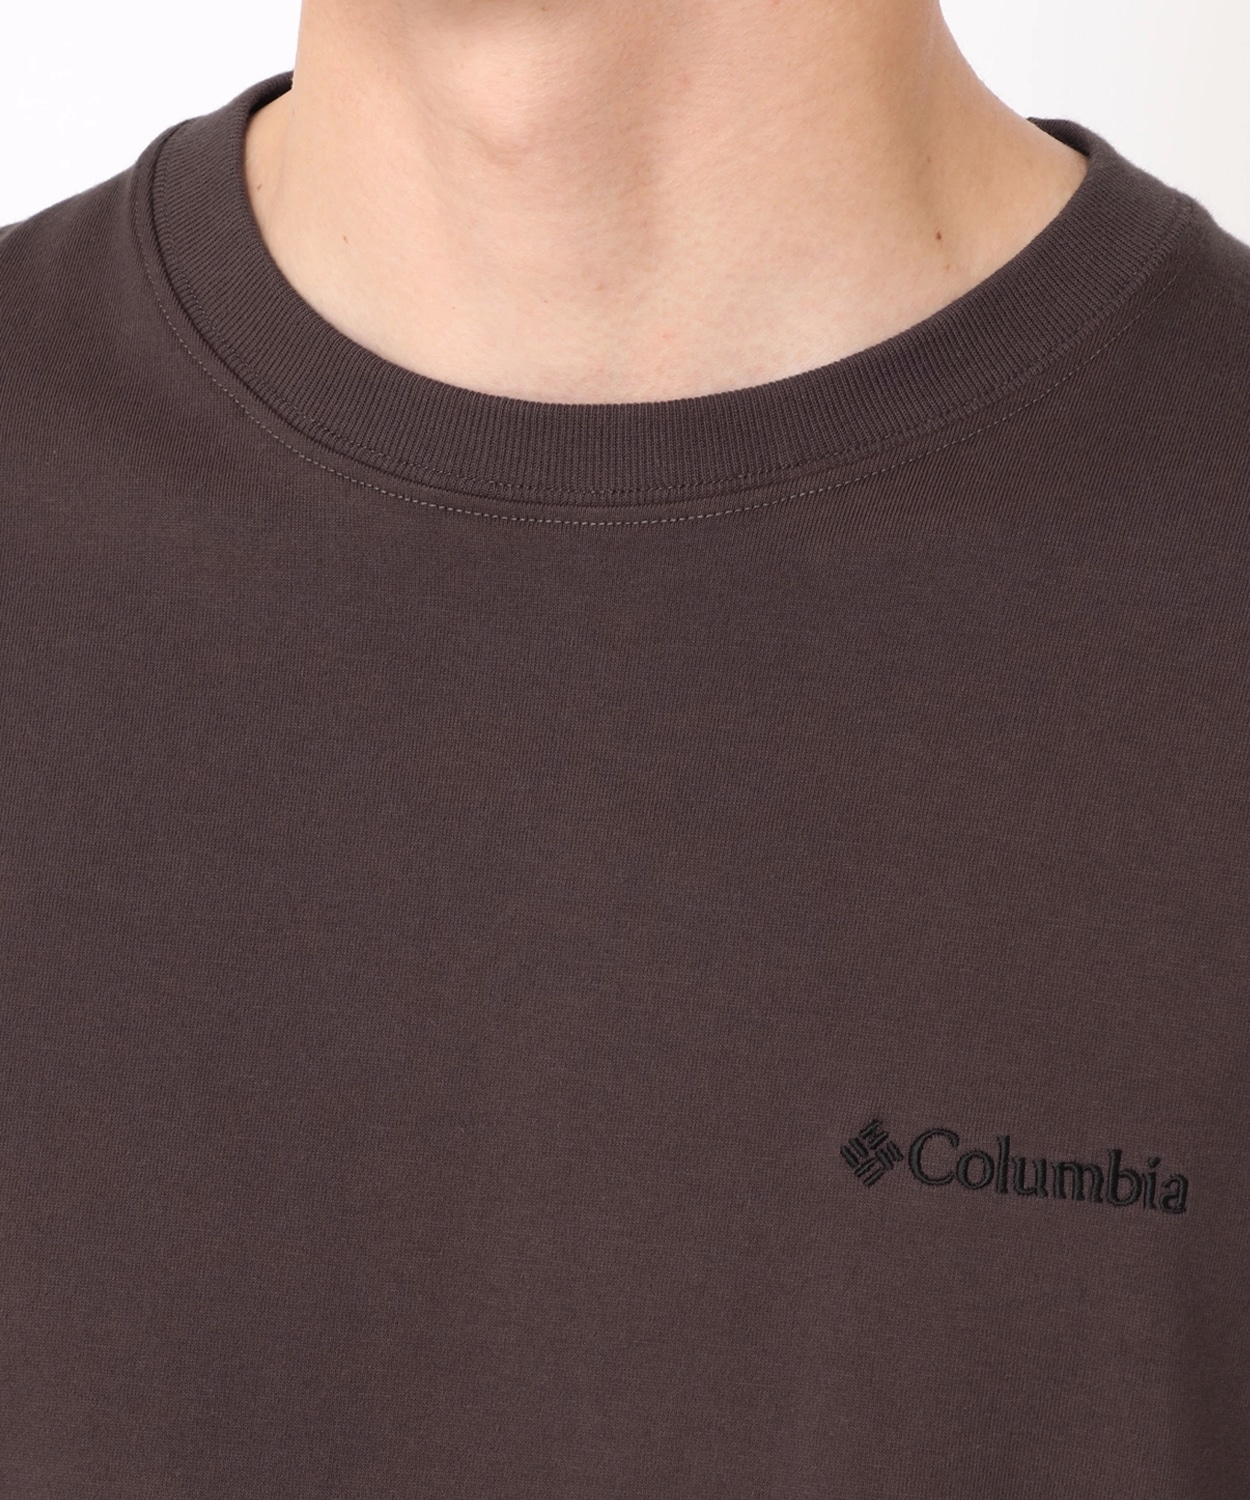 コロンビア公式サイトニューファウンドガーデンロングスリーブTシャツ(S Black): アウトレット商品以外用│アウトドア用品のコロンビア スポーツウェア公式通販サイト